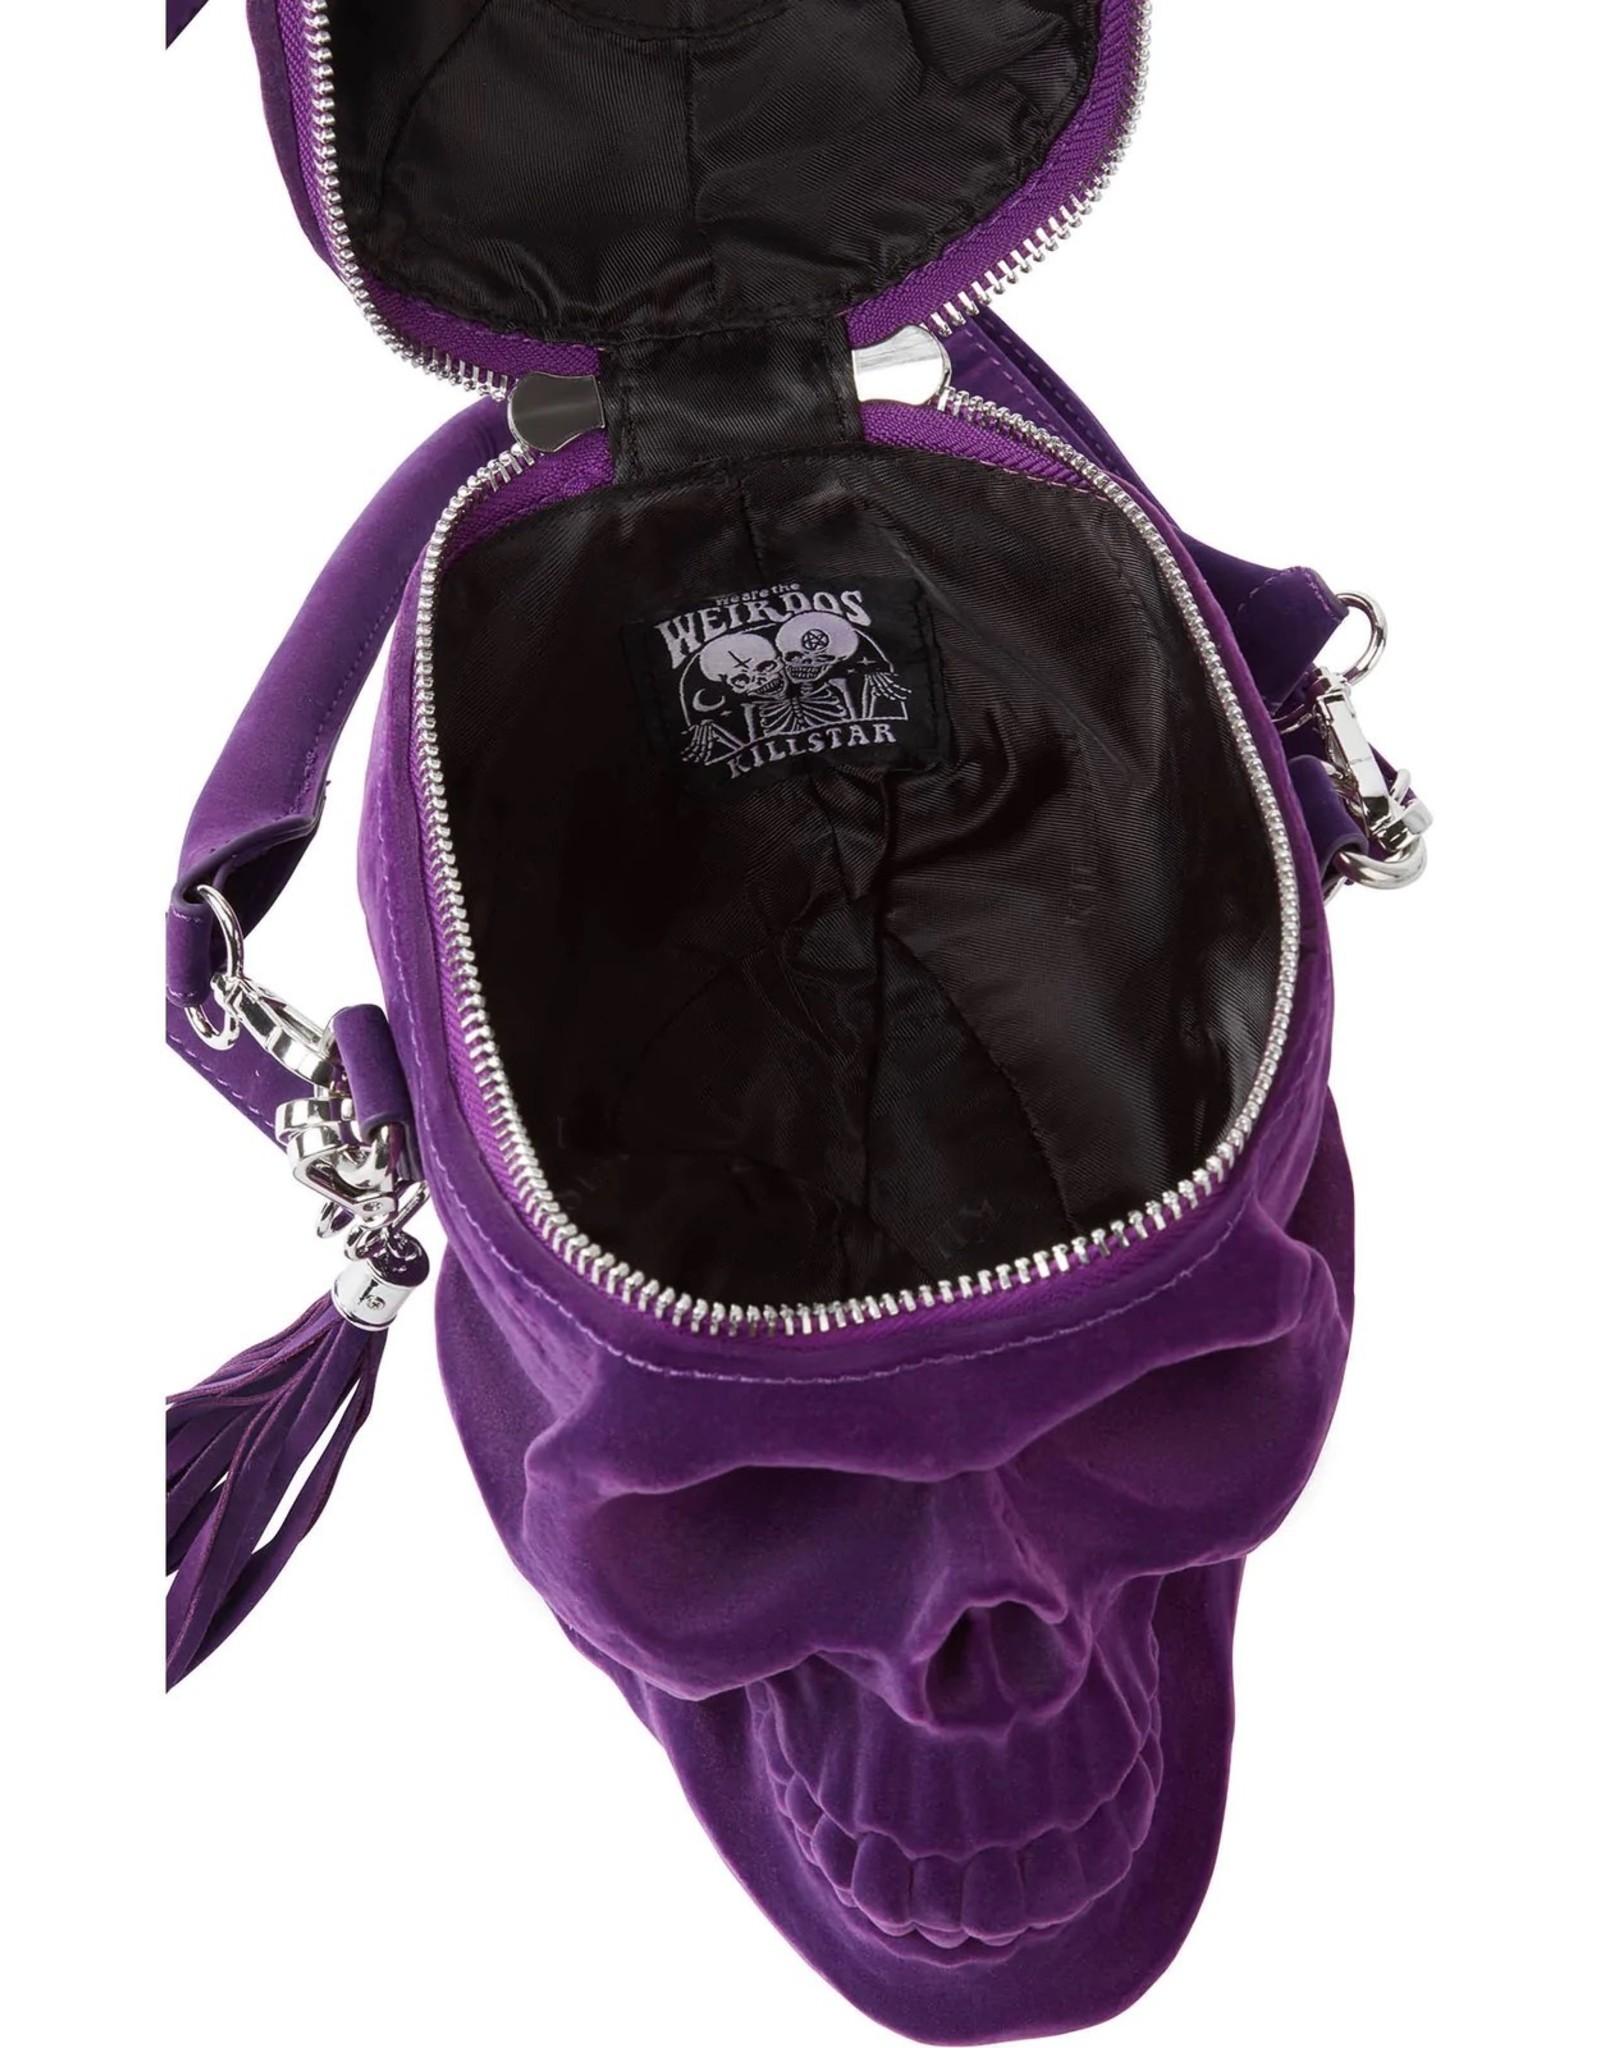 Killstar Gothic bags Steampunk bags - KillStar Grave Digger Skull handbag - Plum